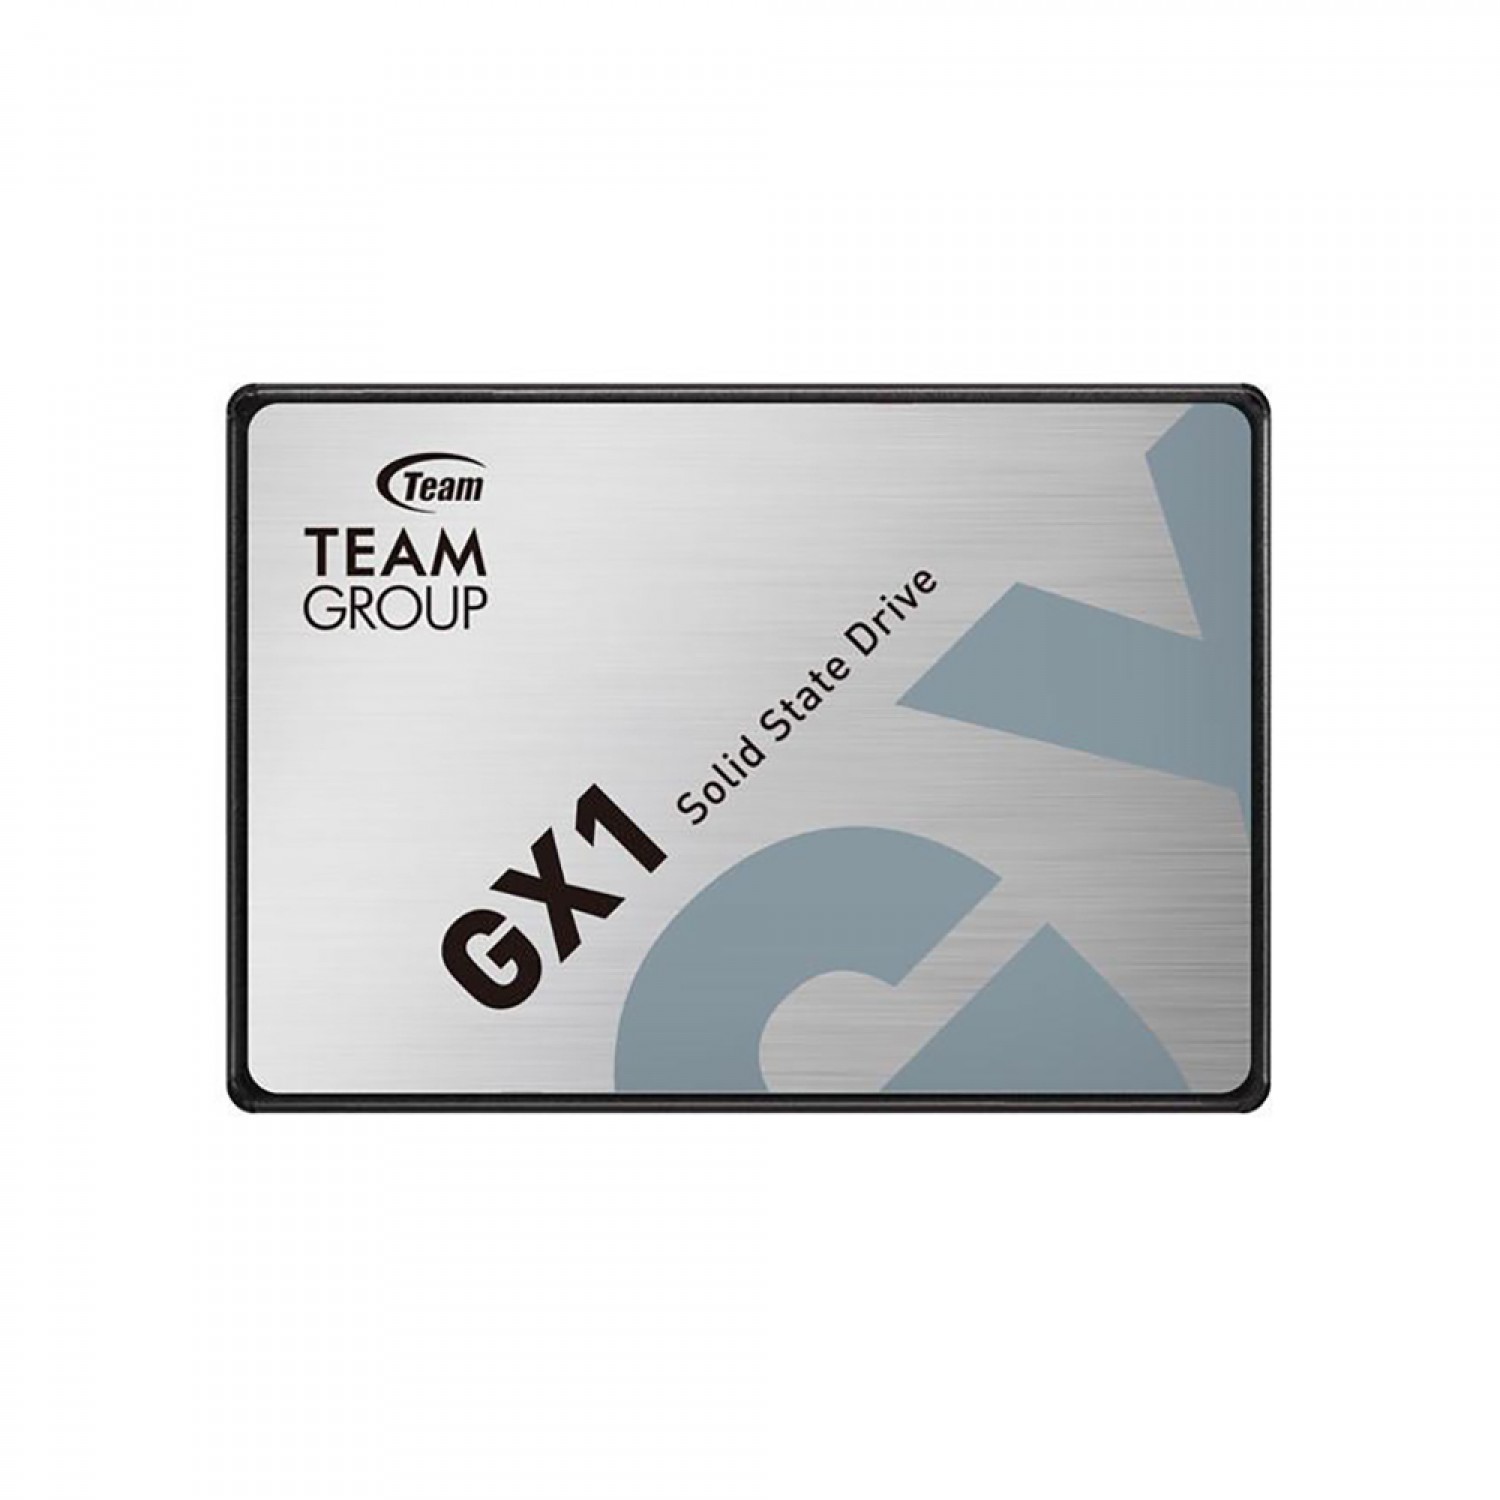 حافظه اس اس دی TeamGroup GX1 240GB